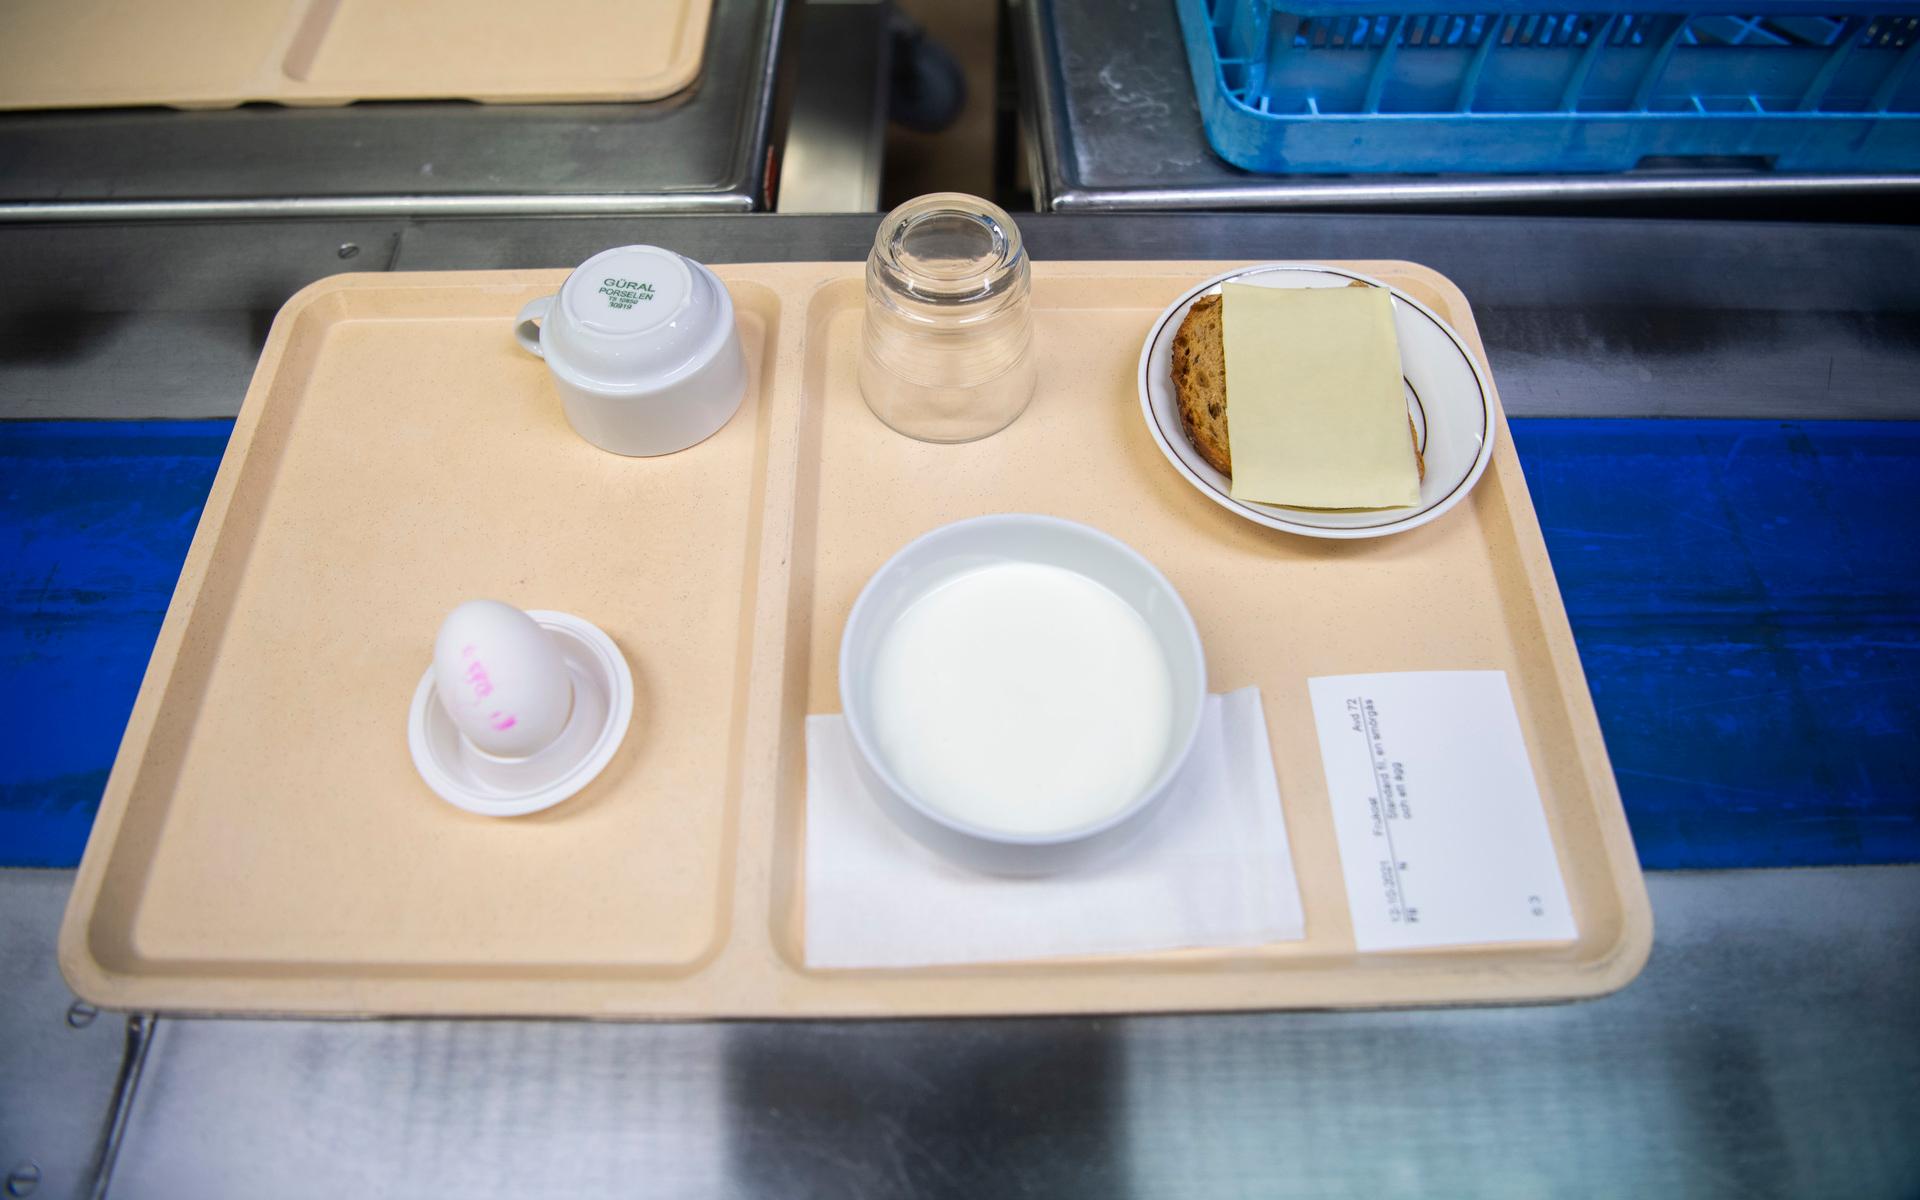 En standardfrukost: ostsmörgås, fil och ägg. Lappen på brickan visar vad just denna patienten ska ha och om det ingår någon specialkost.